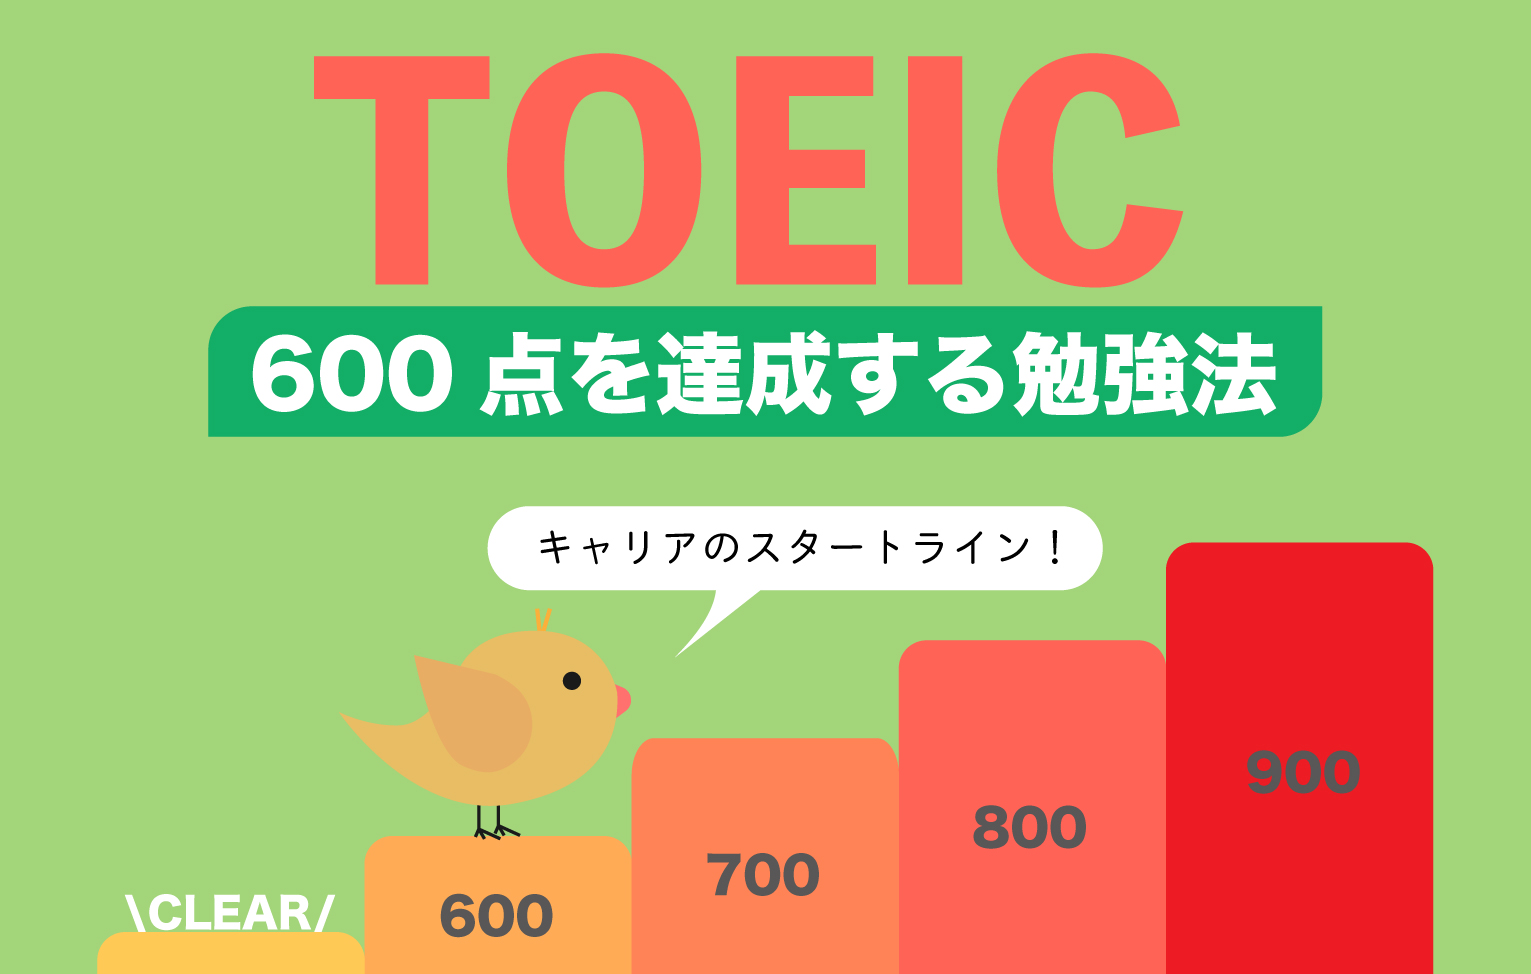 TOEIC600点を達成するための勉強法【英語キャリアのスタートライン】